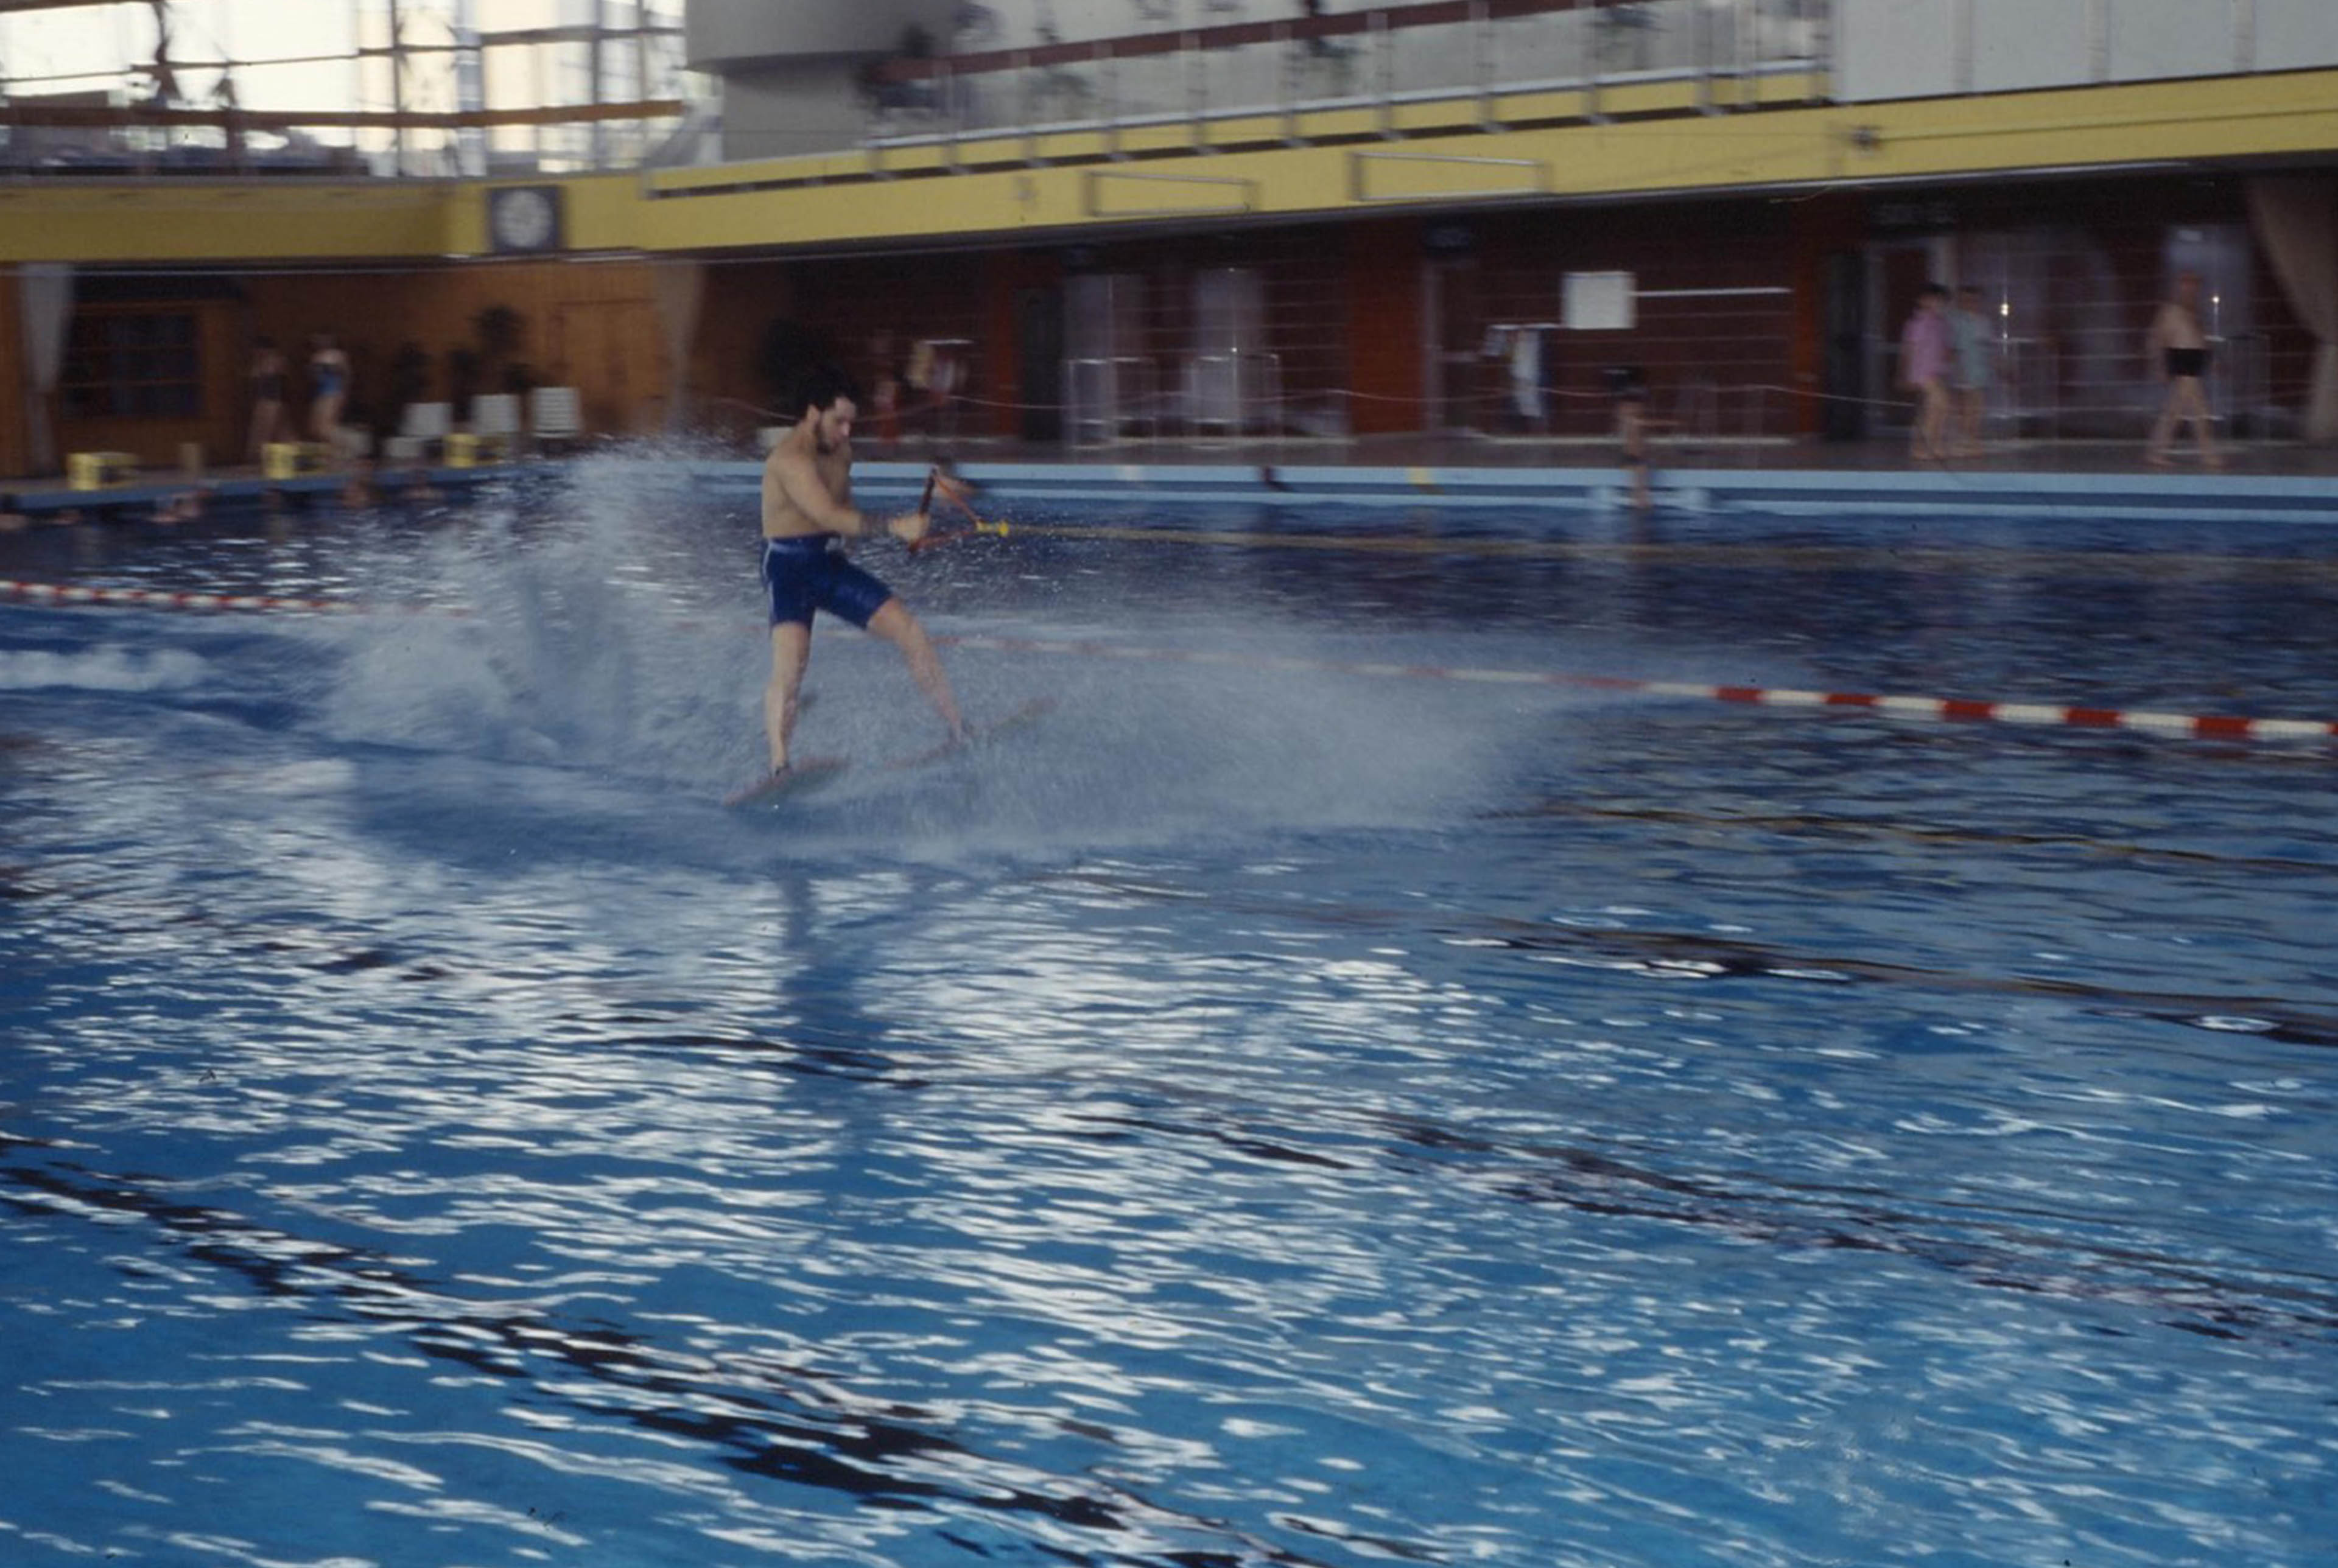 Mann auf Wasserski fährt übers Wasser im Schwimmbecken